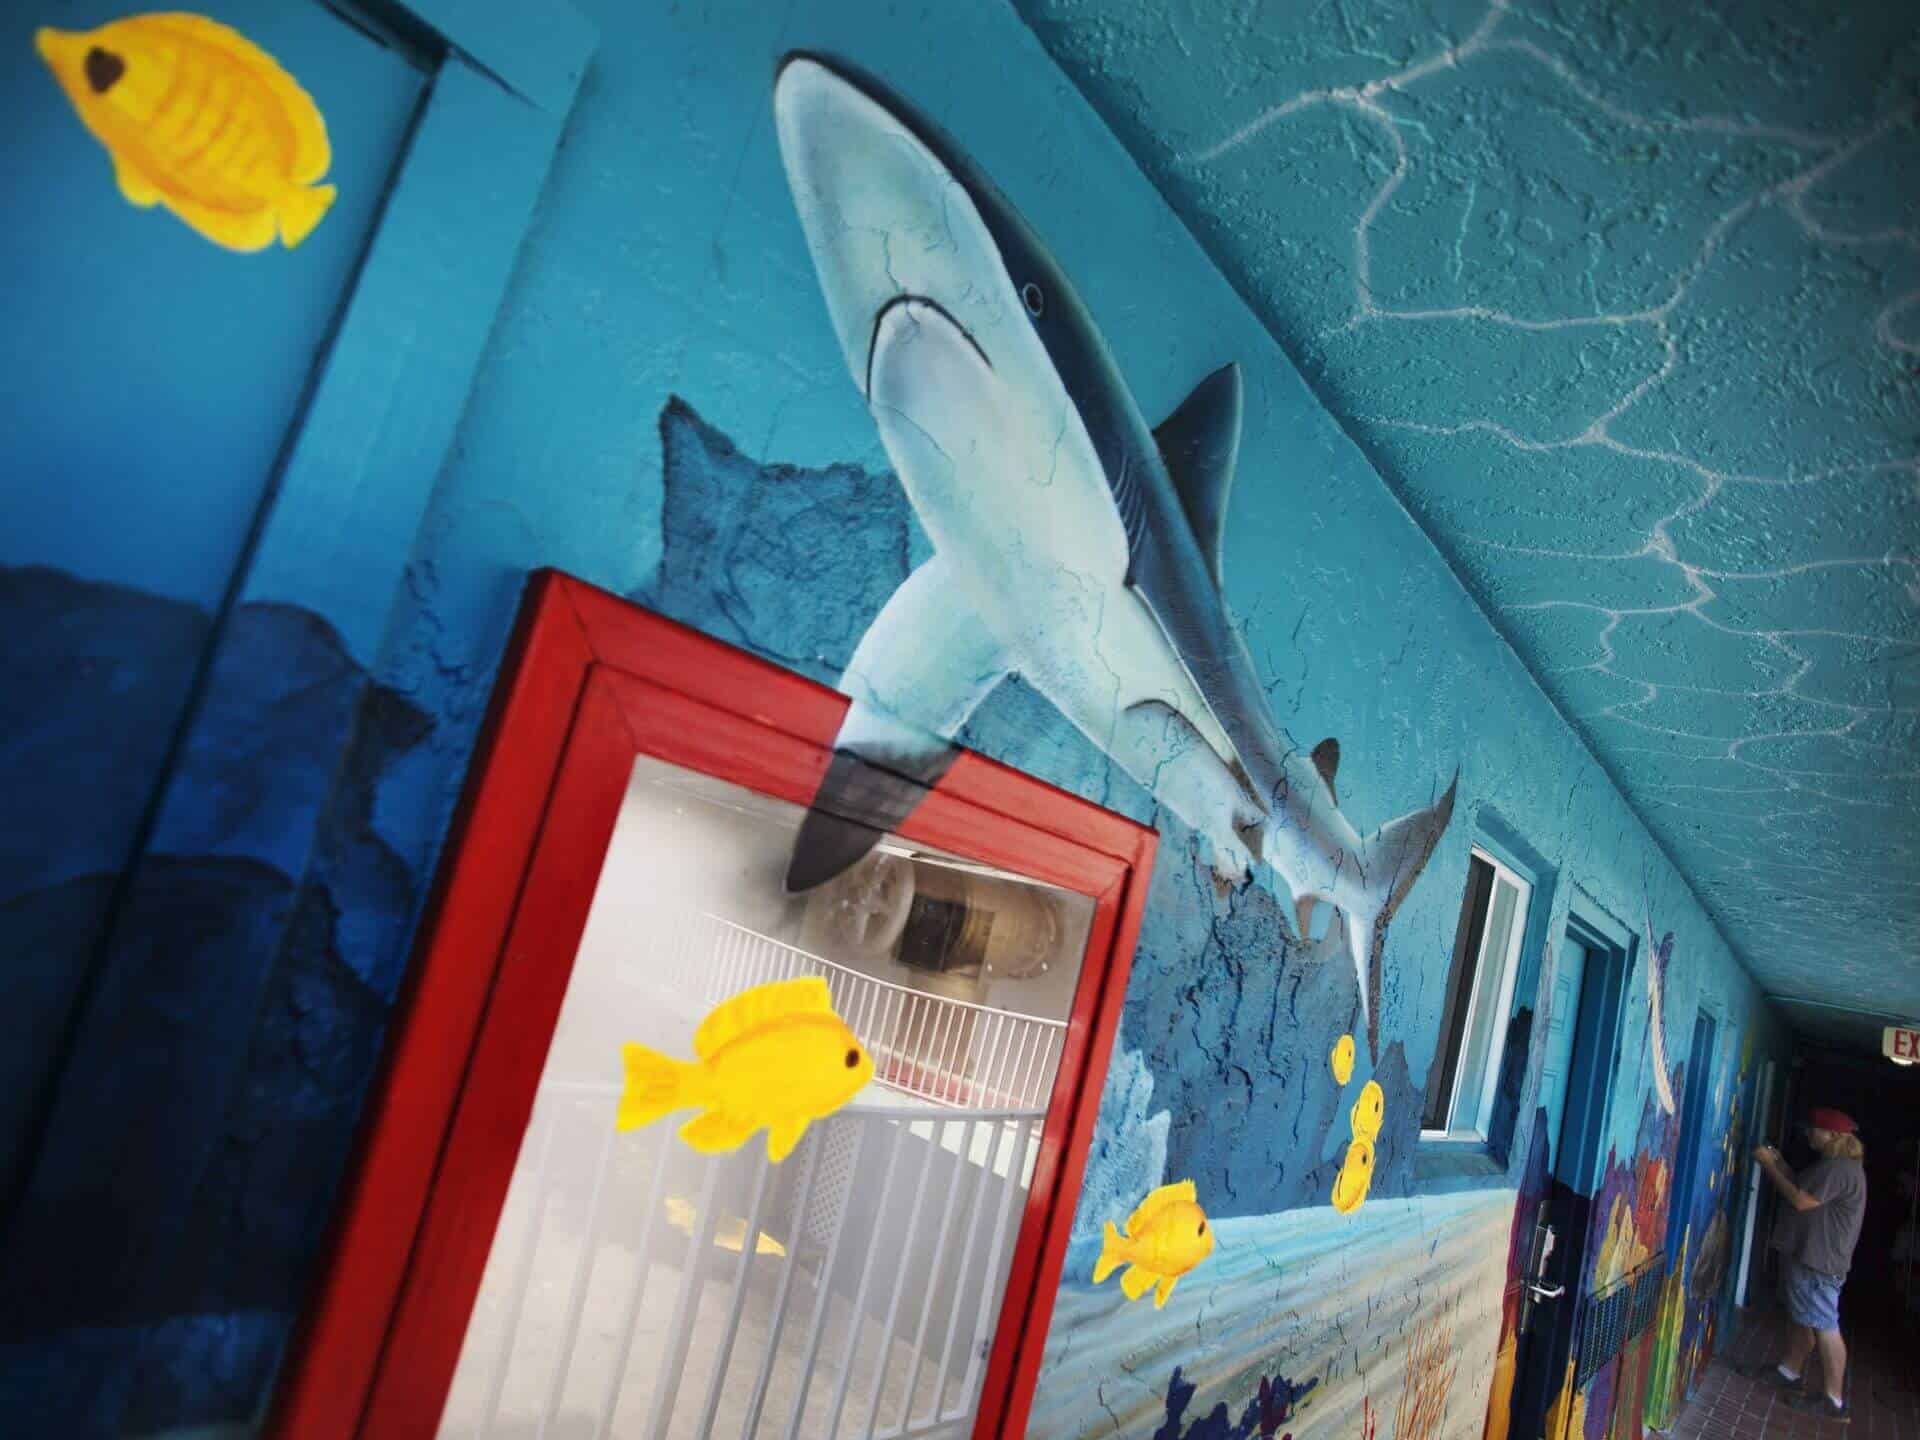 Lani Kai Island Resort | Mural Art: Killer Shark | Fort Myers Beach